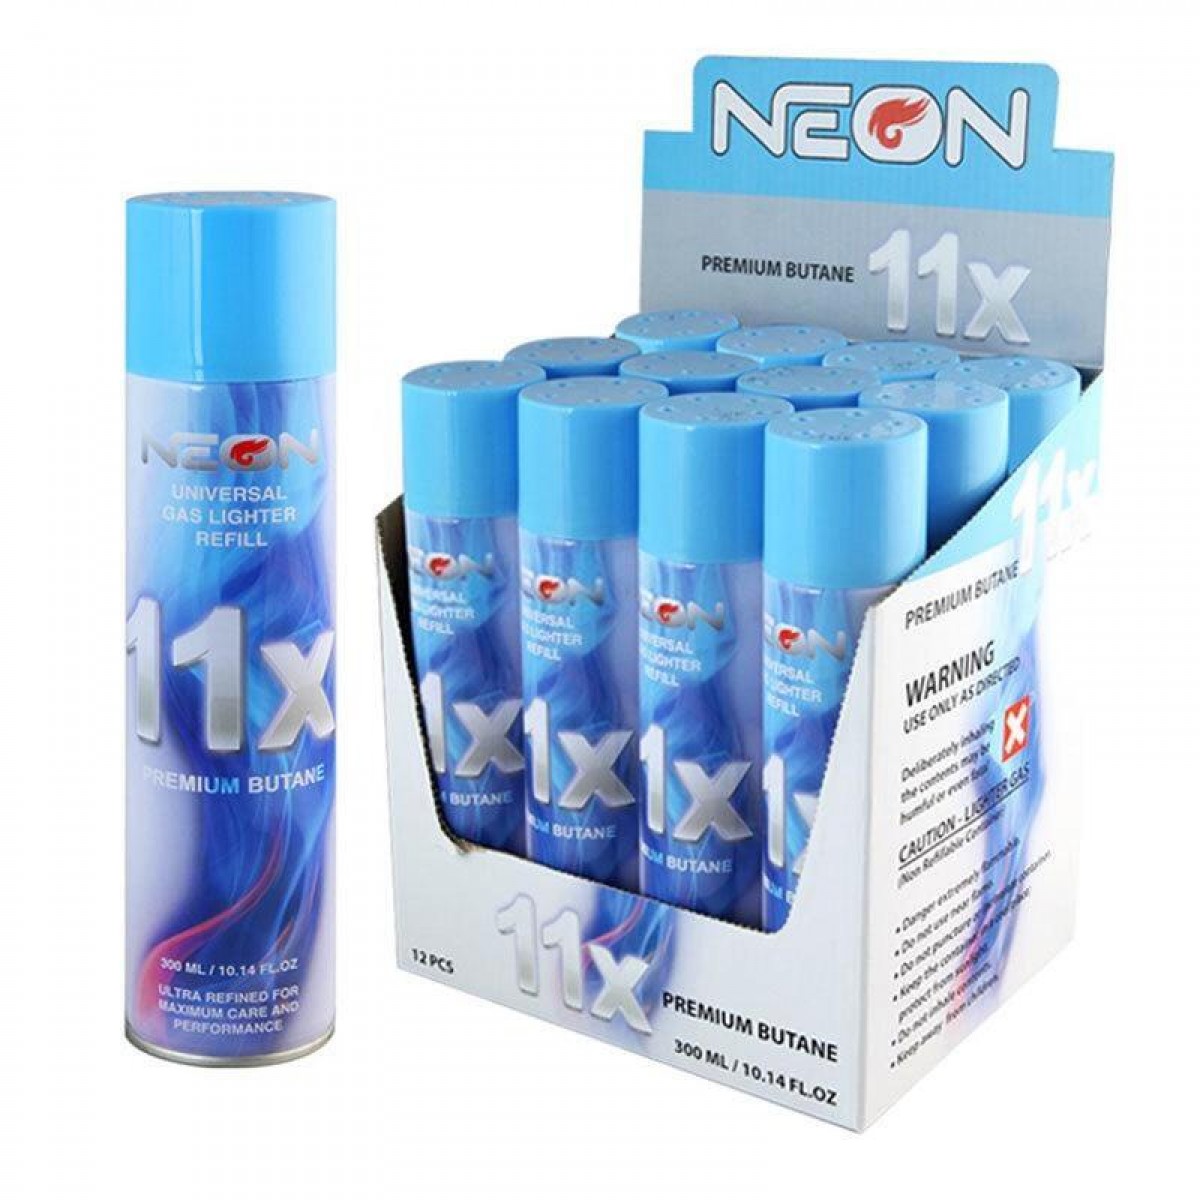 Neon 11x Refined Butane 12CT Case